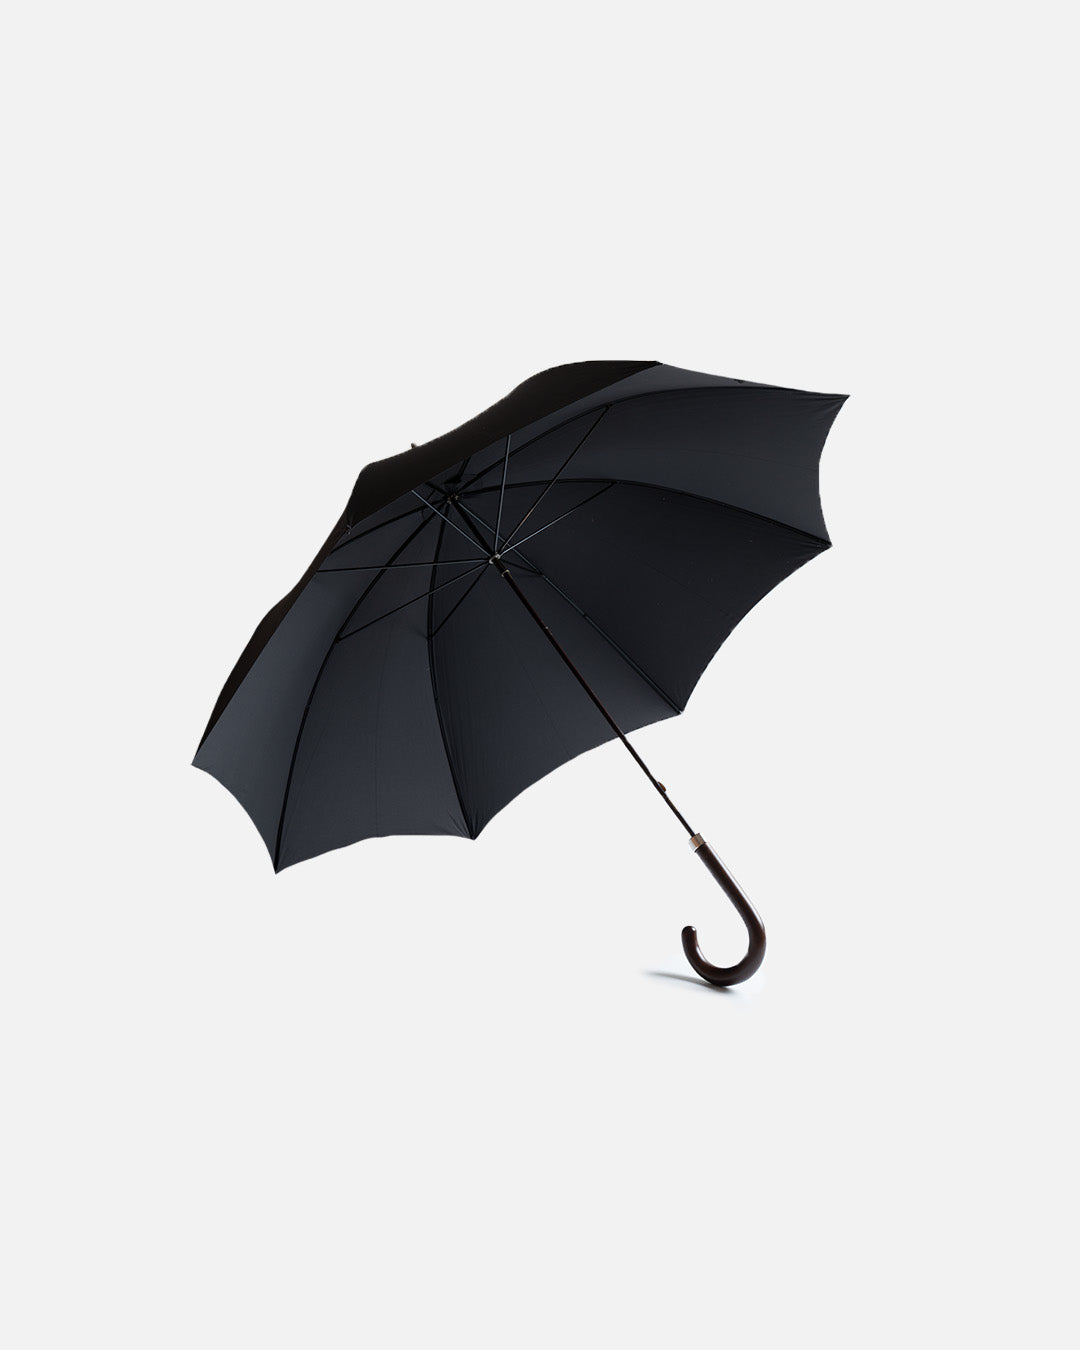 Fox Umbrella GT2 Black (dark brown maple handle)